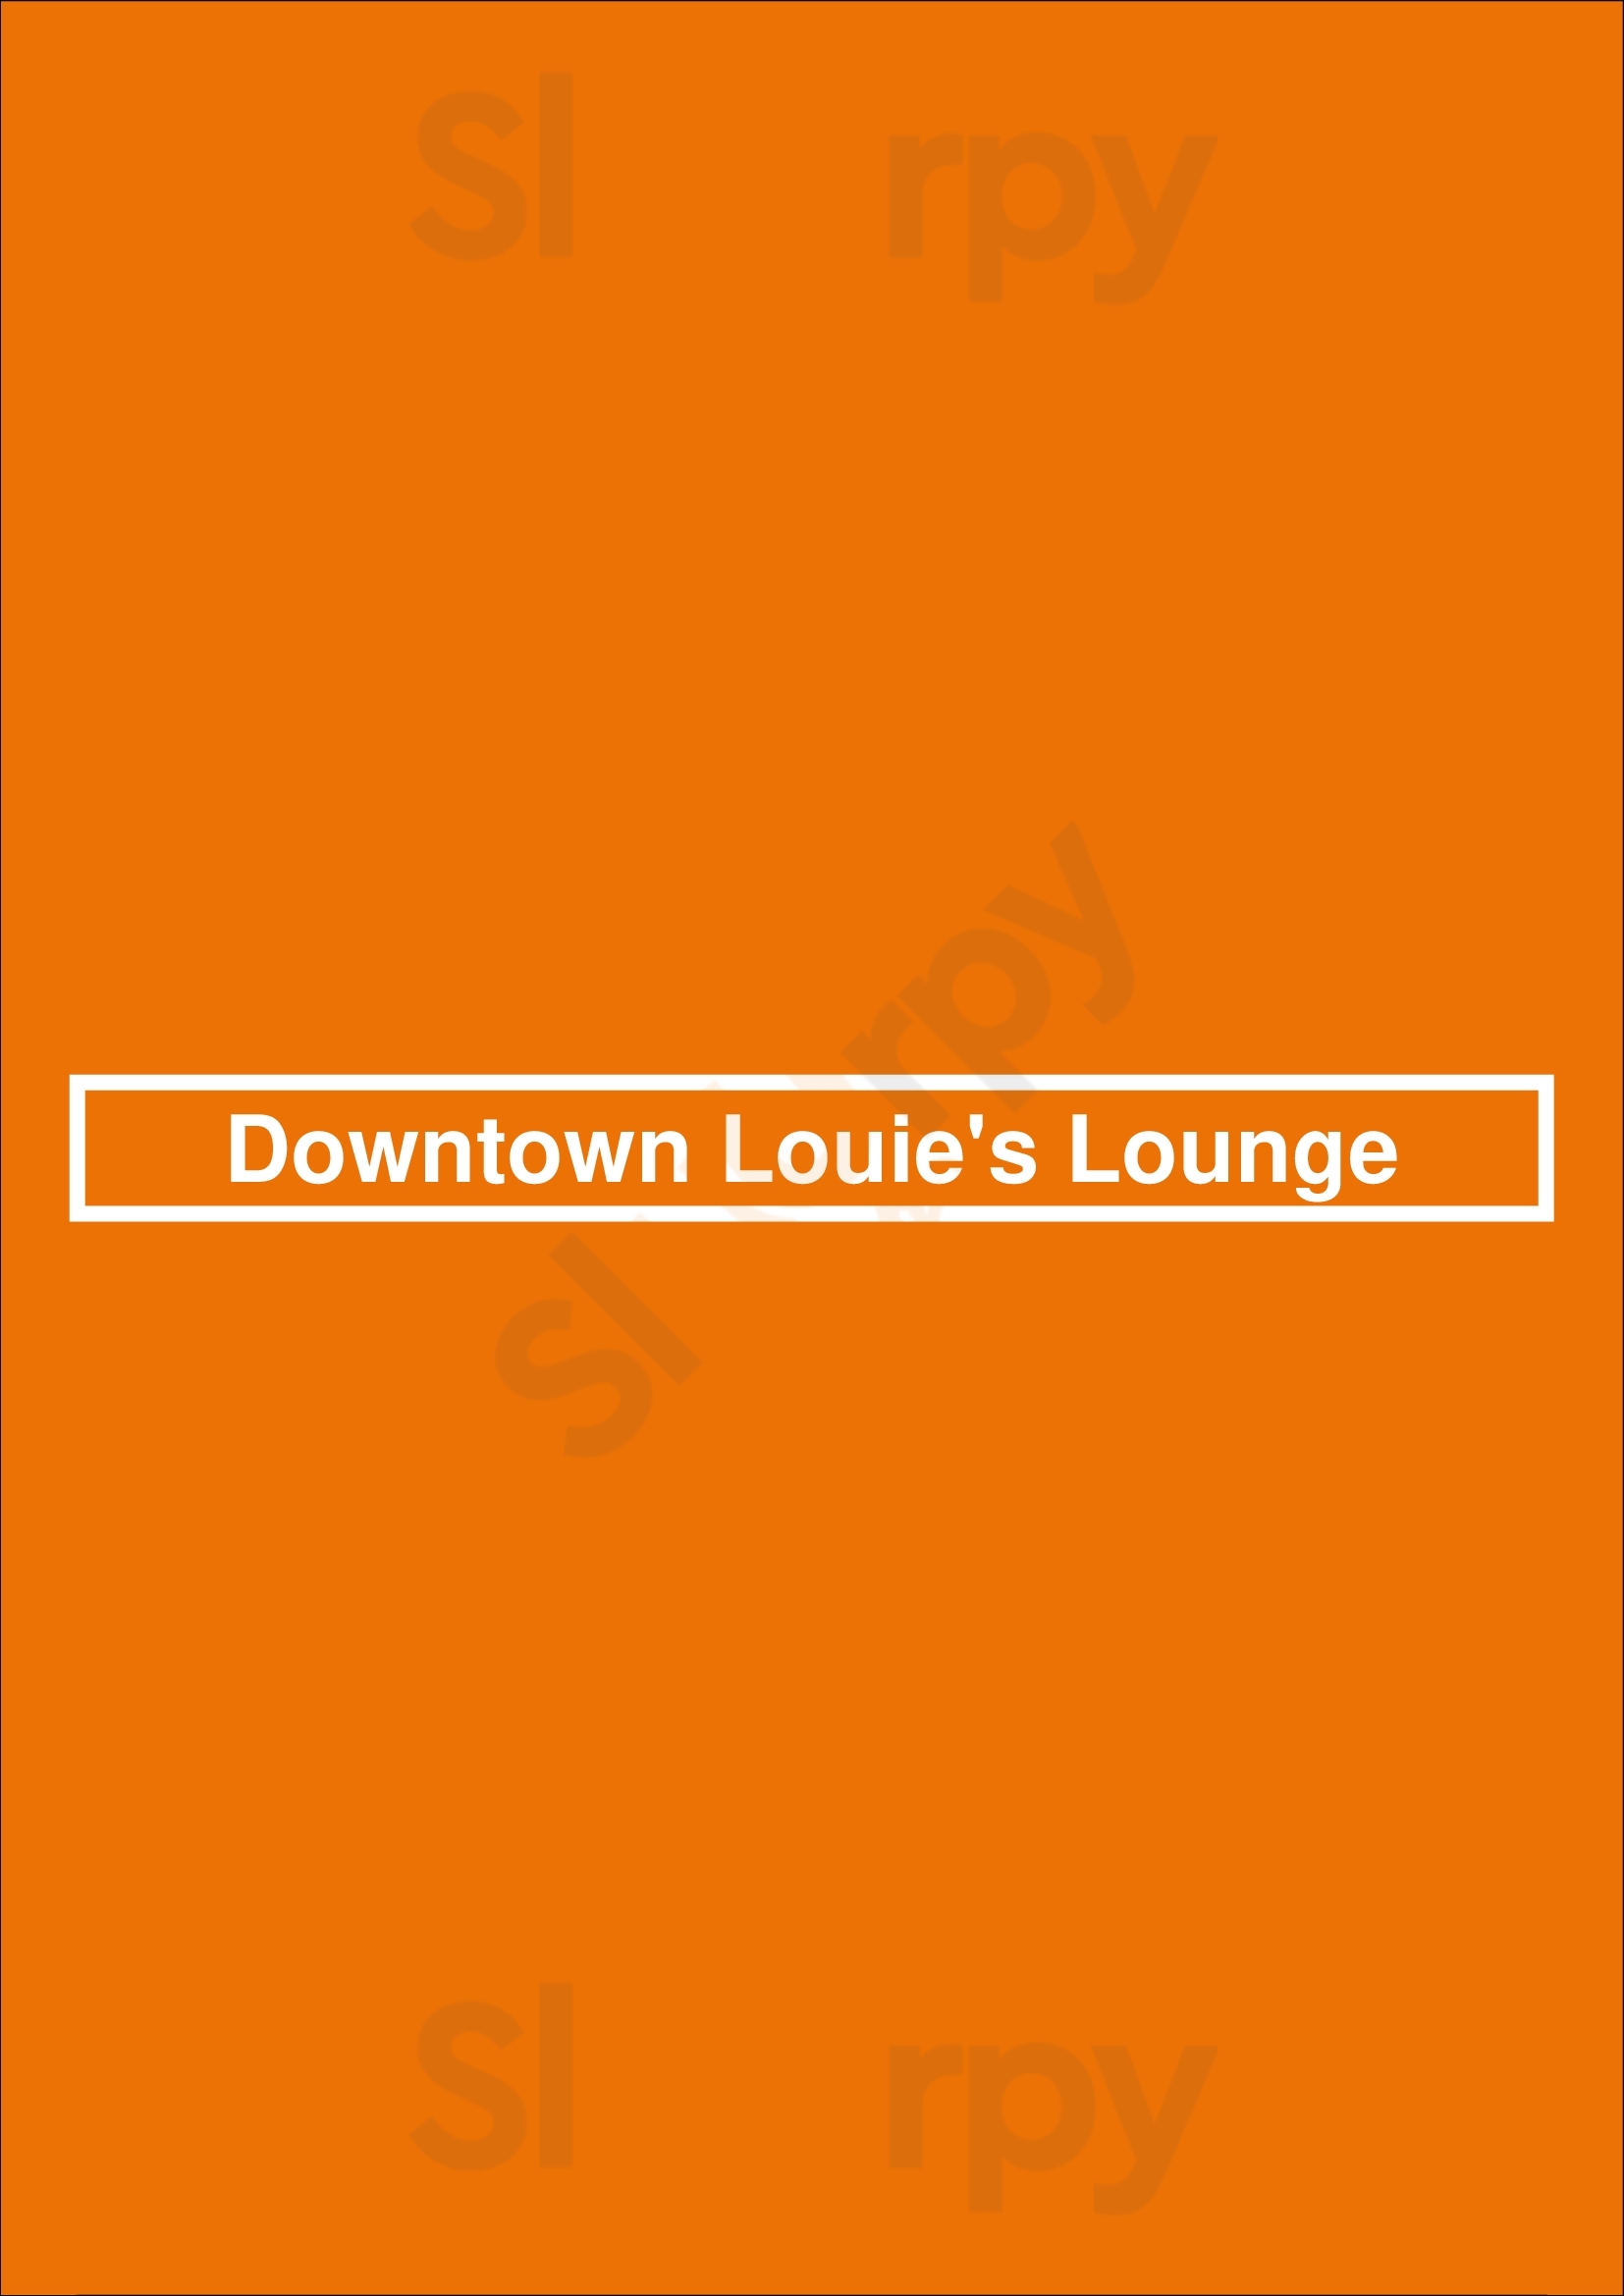 Downtown Louie's Lounge Detroit Menu - 1